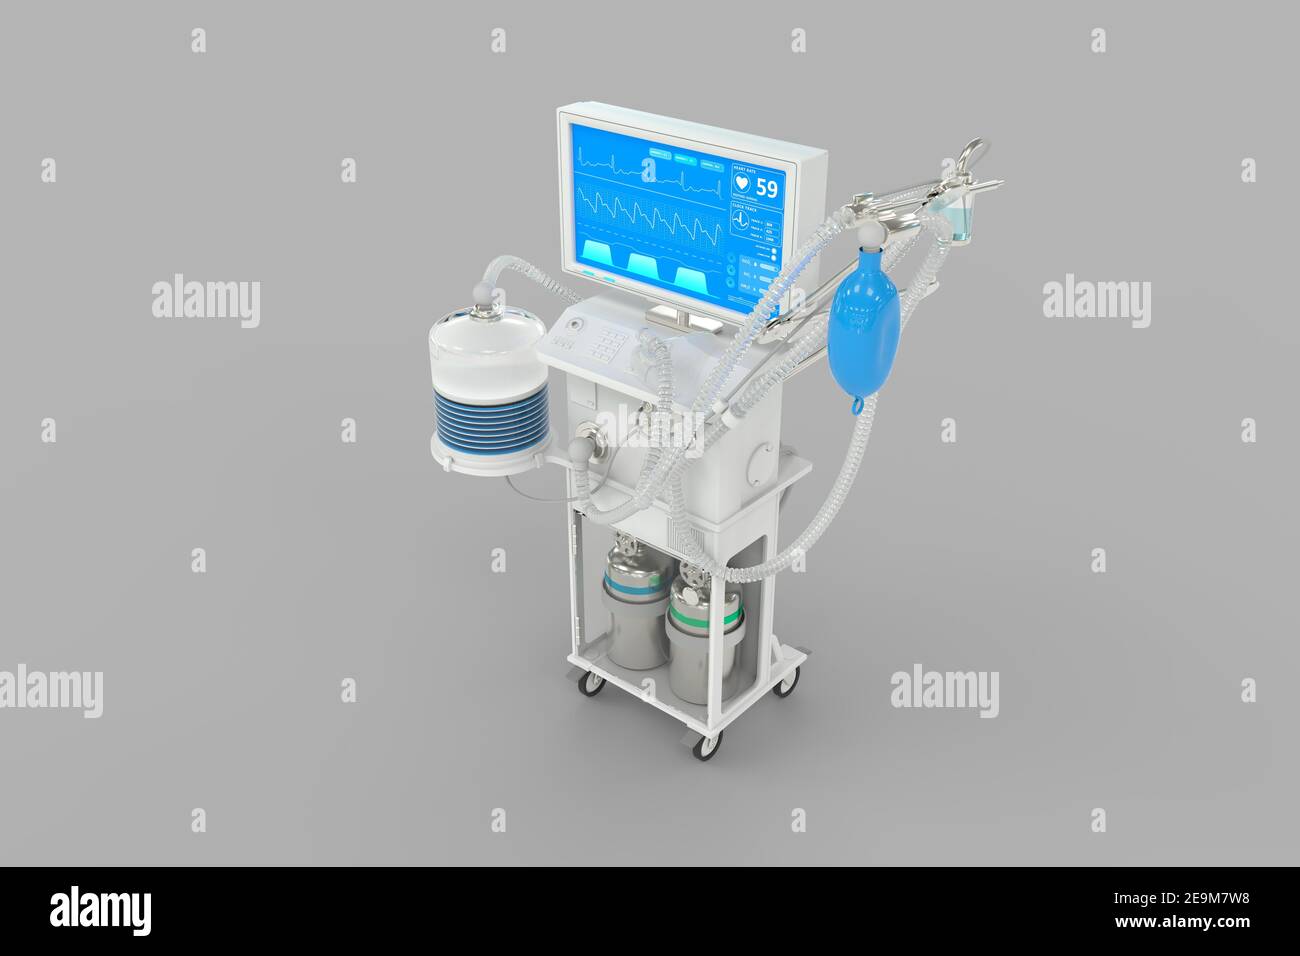 ICU künstlicher Lungenventilator mit fiktivem Design isoliert auf grauem Hintergrund - heal covid-19 Konzept, medizinische 3D Illustration Stockfoto